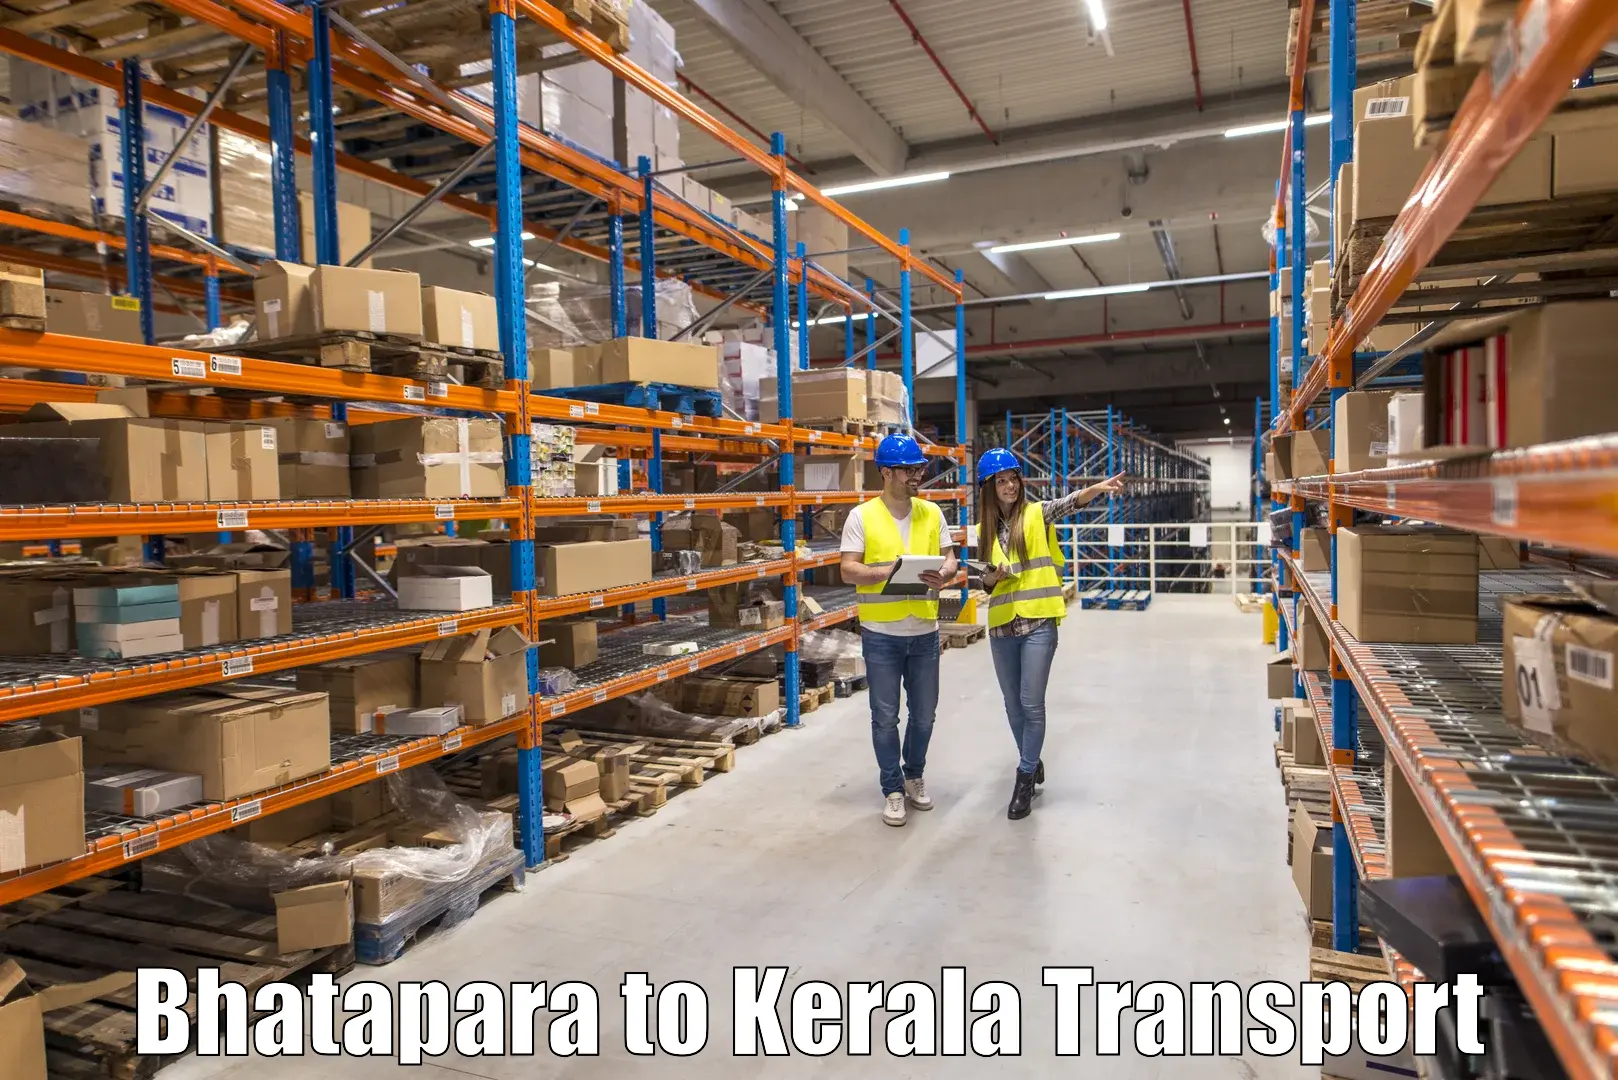 Delivery service Bhatapara to Neyyattinkara